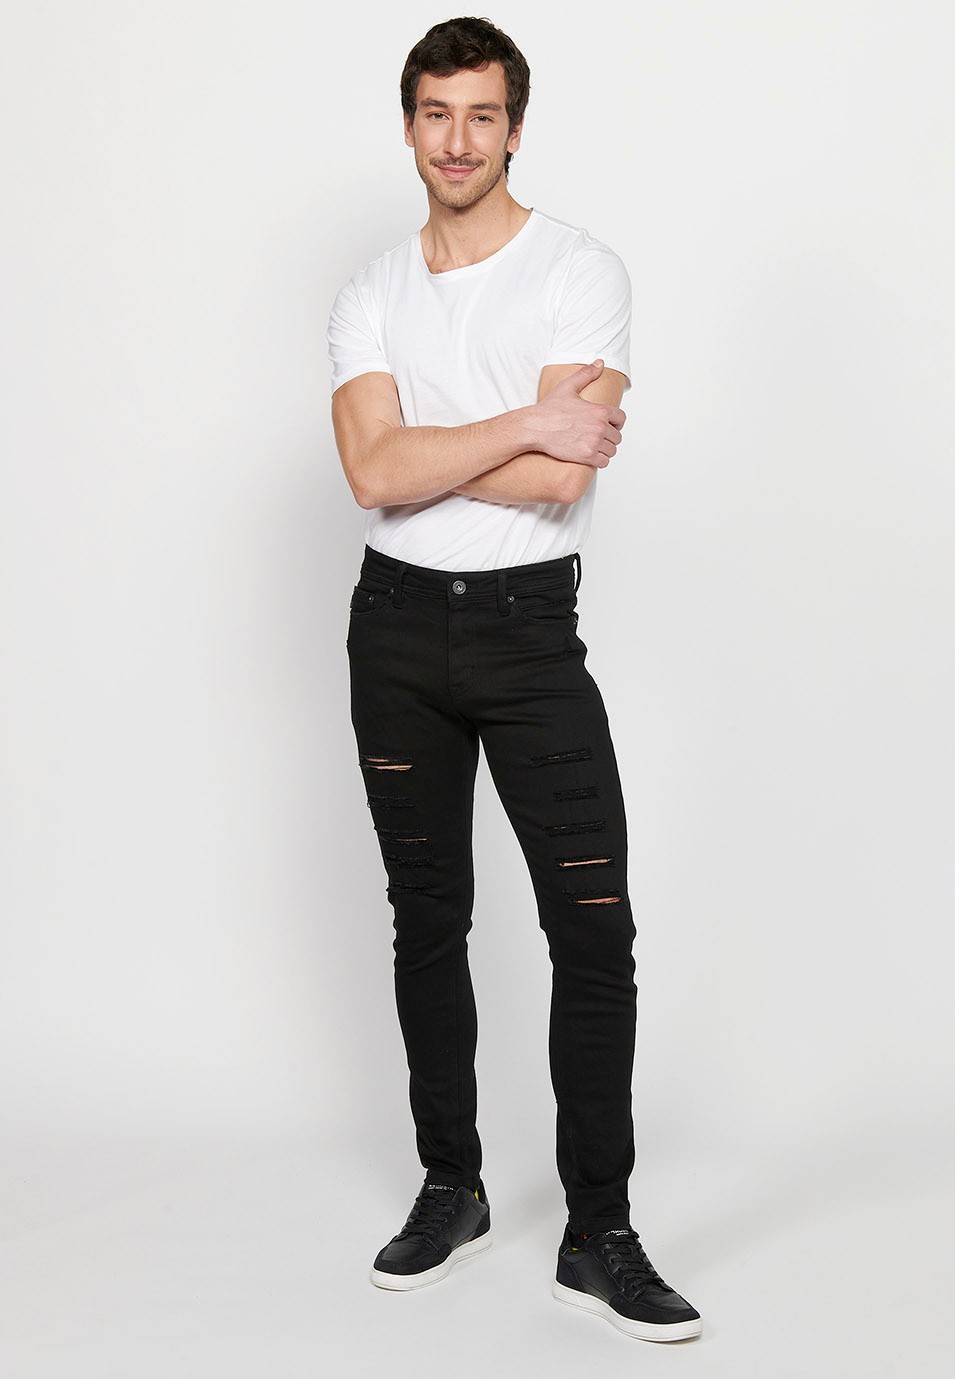 Lange, schmale Super-Skinny-Jeans mit Frontverschluss mit Reißverschluss und Knopf in schwarzer Denim-Farbe für Herren